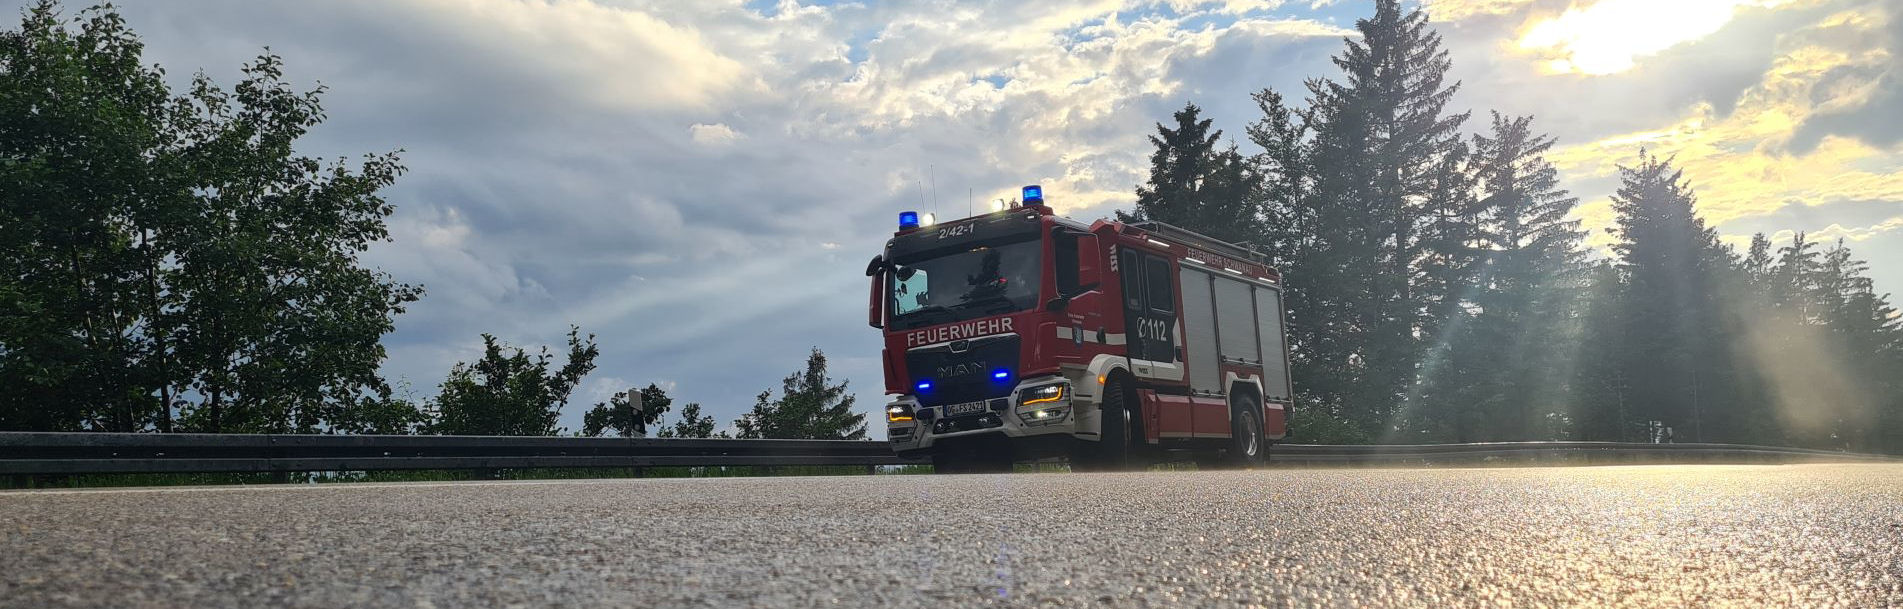 Hintergrundbilder der Feuerwehr Schwanau